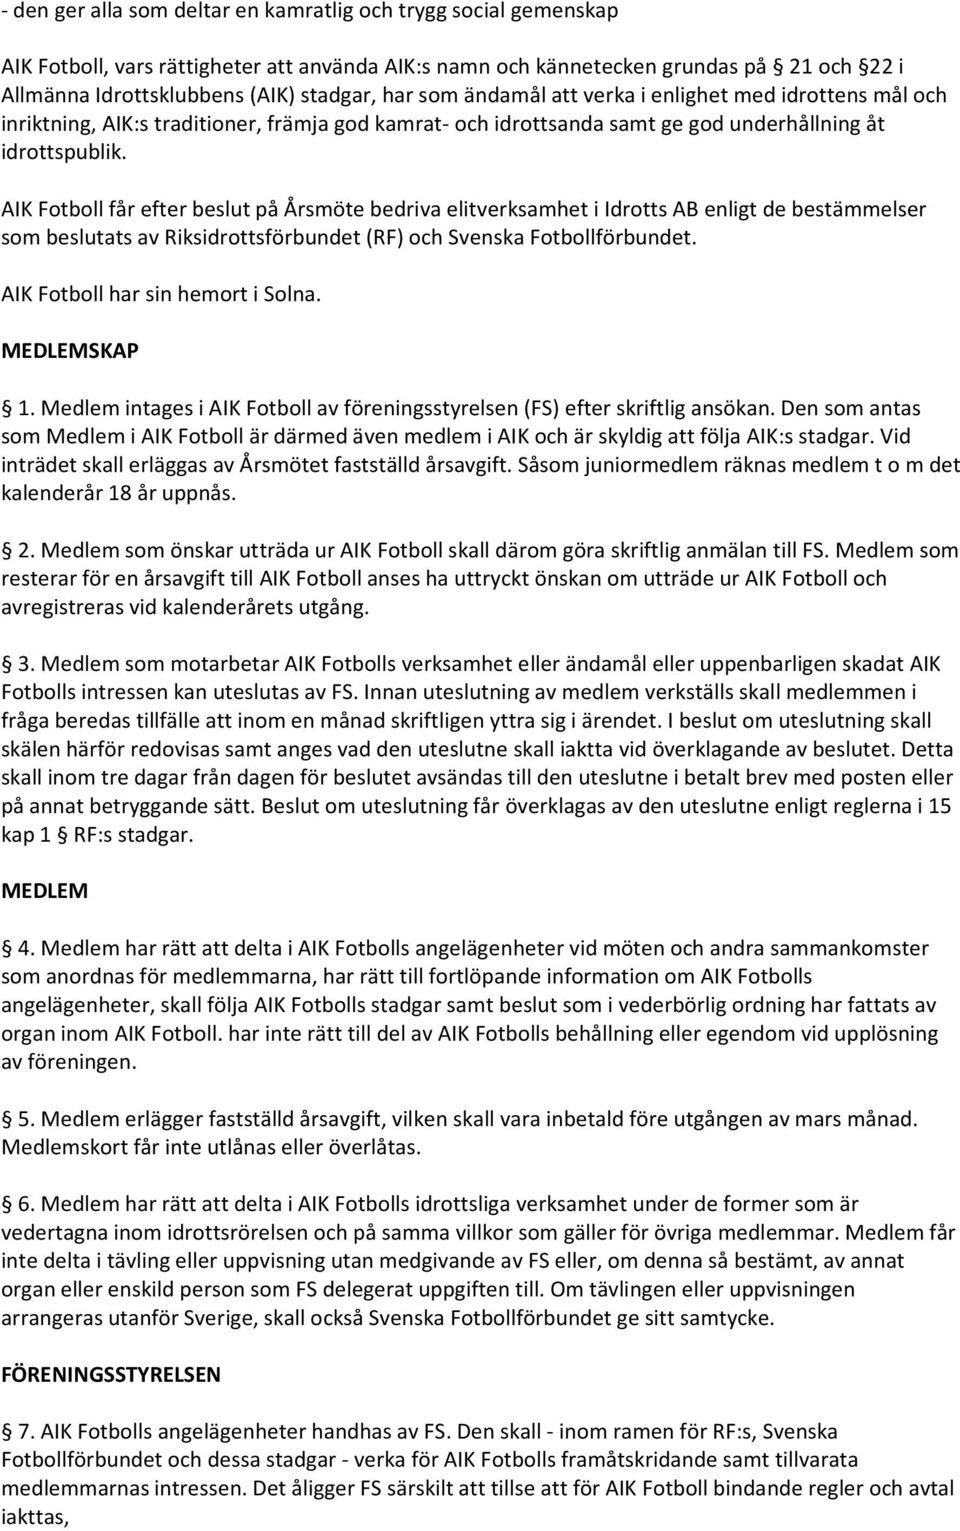 AIK Fotboll får efter beslut på Årsmöte bedriva elitverksamhet i Idrotts AB enligt de bestämmelser som beslutats av Riksidrottsförbundet (RF) och Svenska Fotbollförbundet.